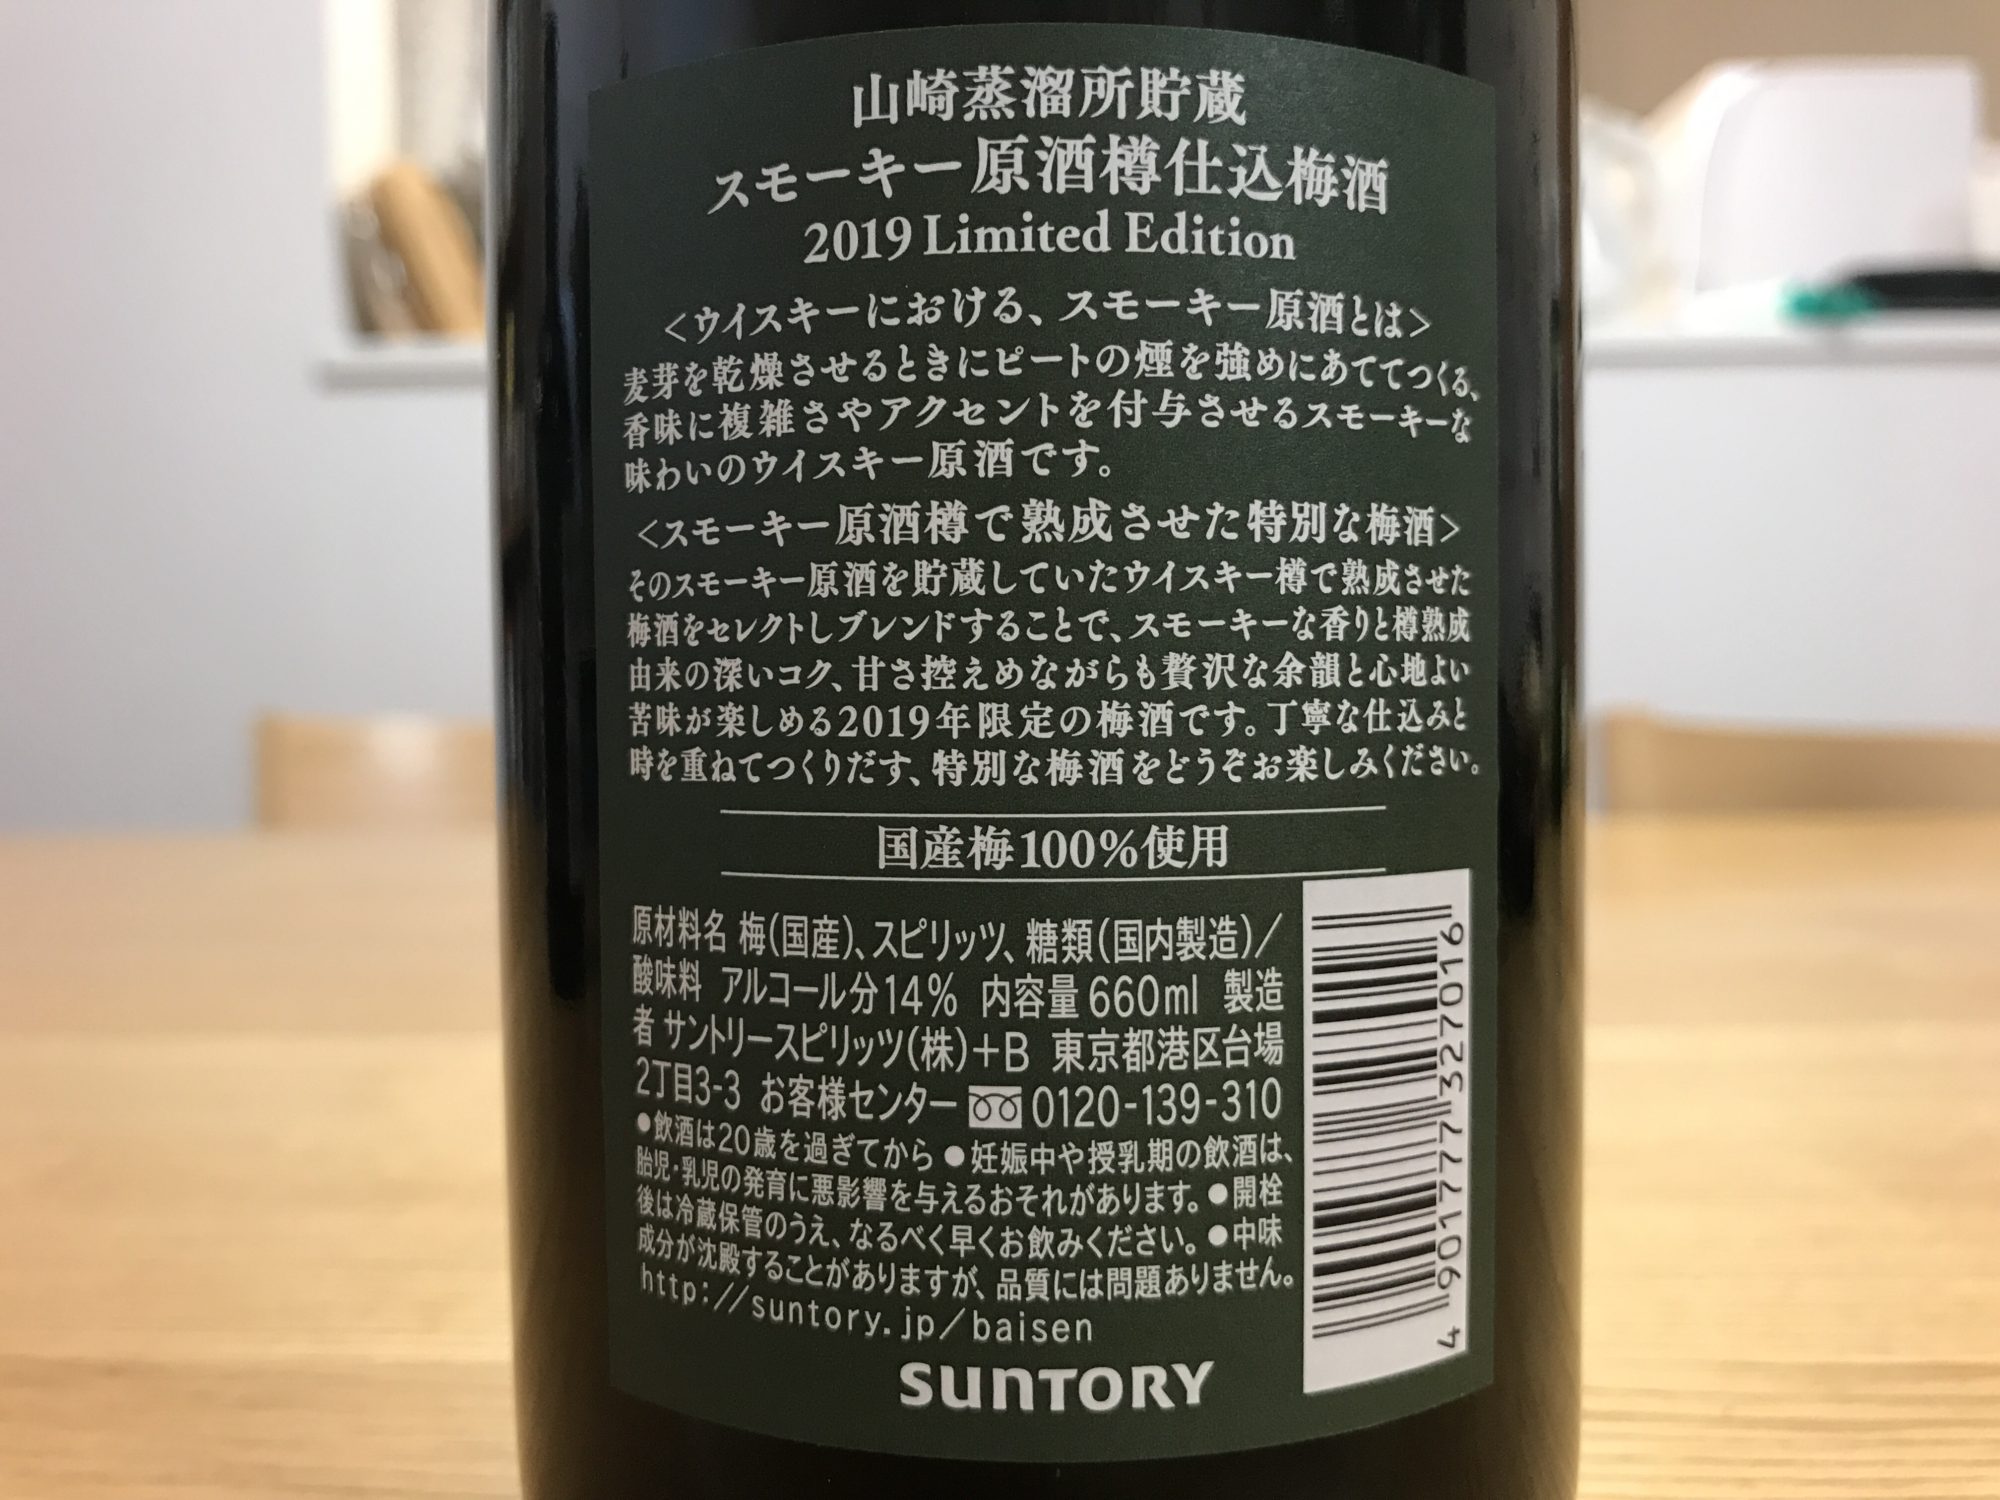 山崎蒸溜所貯蔵 スモーキー原酒樽仕込梅酒 2019 Limited Edition」を 